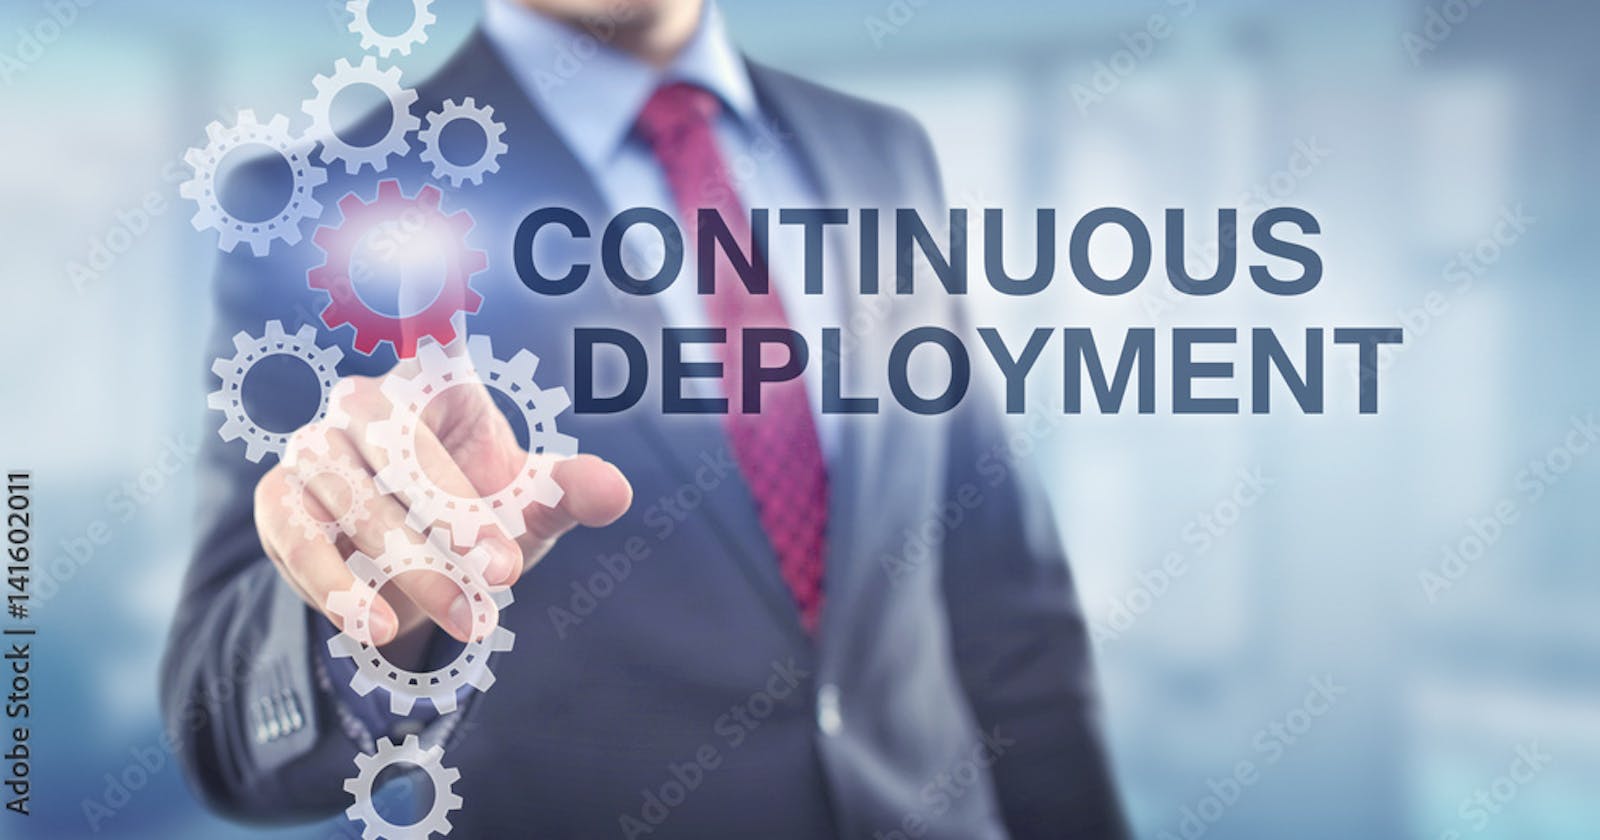 Continuous Deployment Process of DevOps